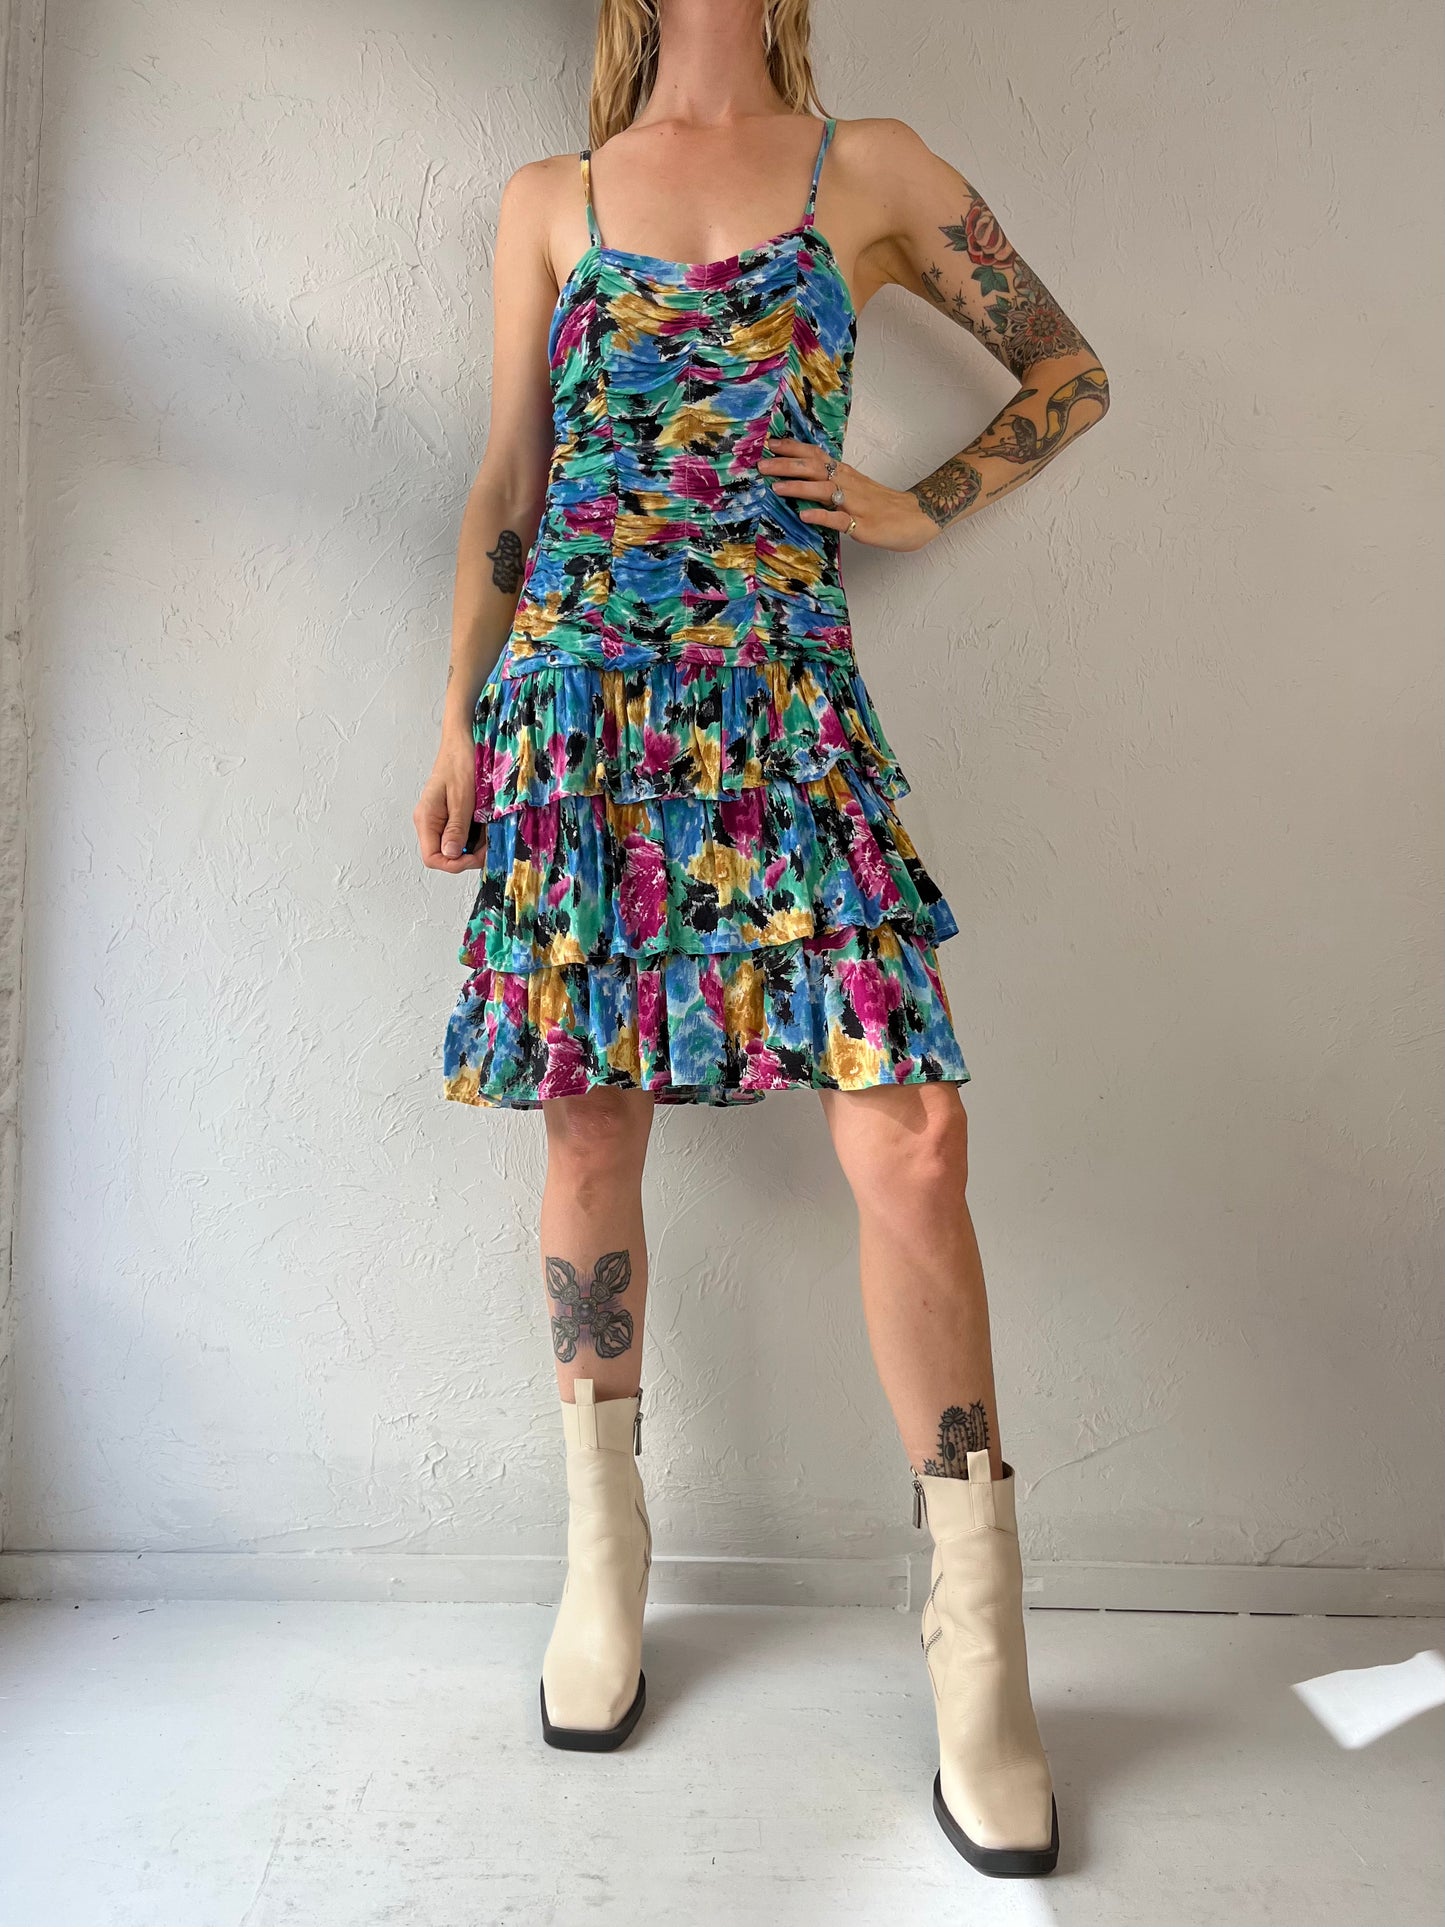 90s Rainbow Ruched Ruffle Sleeveless Dress / Medium